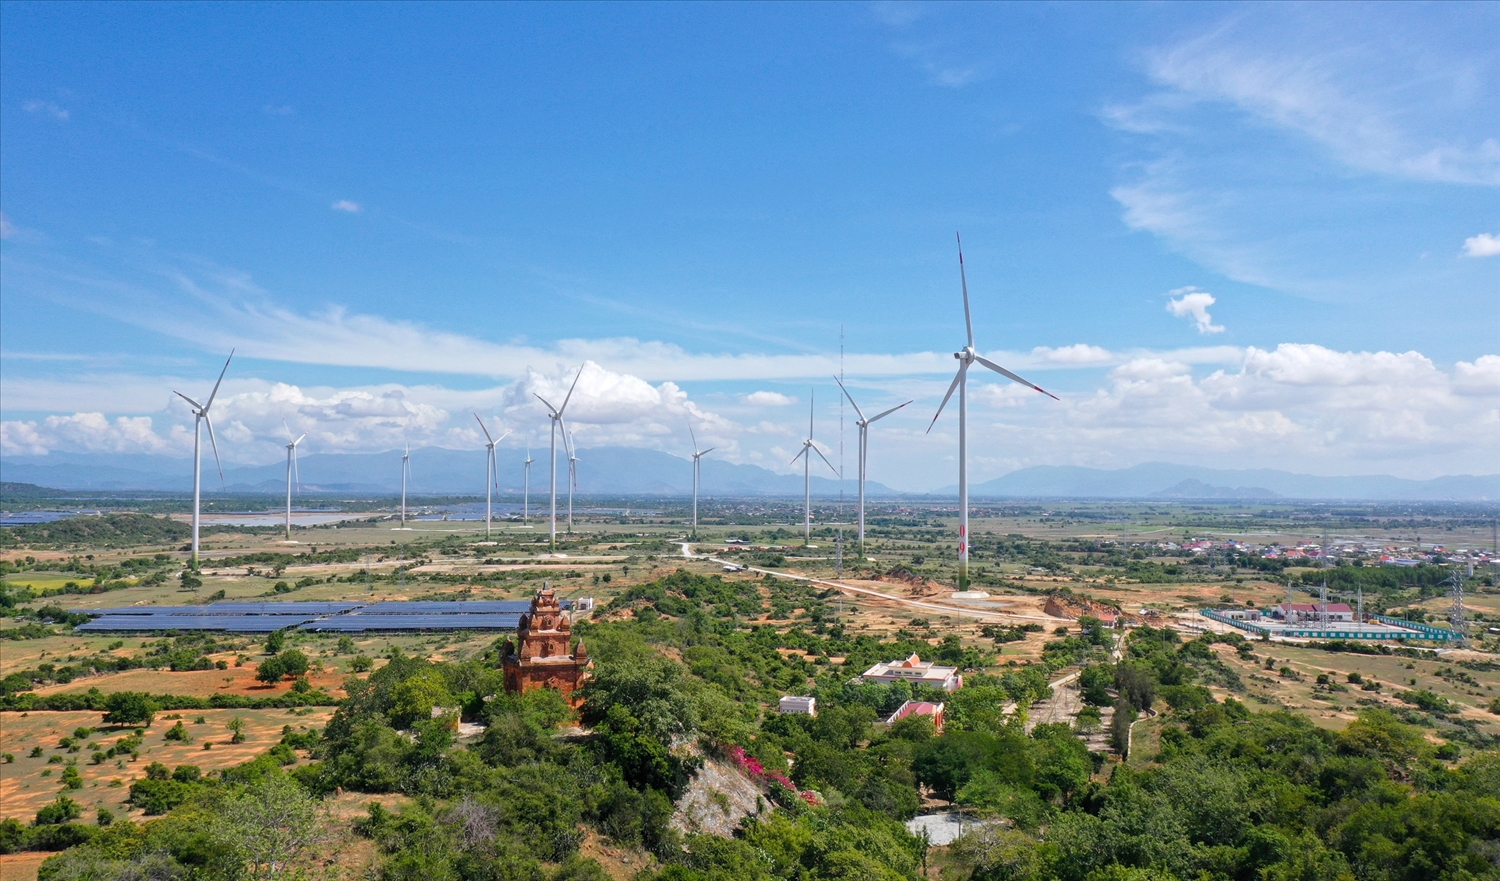 Tổng mức đầu tư đa lĩnh vực của Trungnam Group tại Ninh Thuận đã lên tới con số 2 tỷ đô la. (Ảnh: Toàn cảnh dự án Nhà máy điện gió số 5 vừa đi vào hoạt đông)